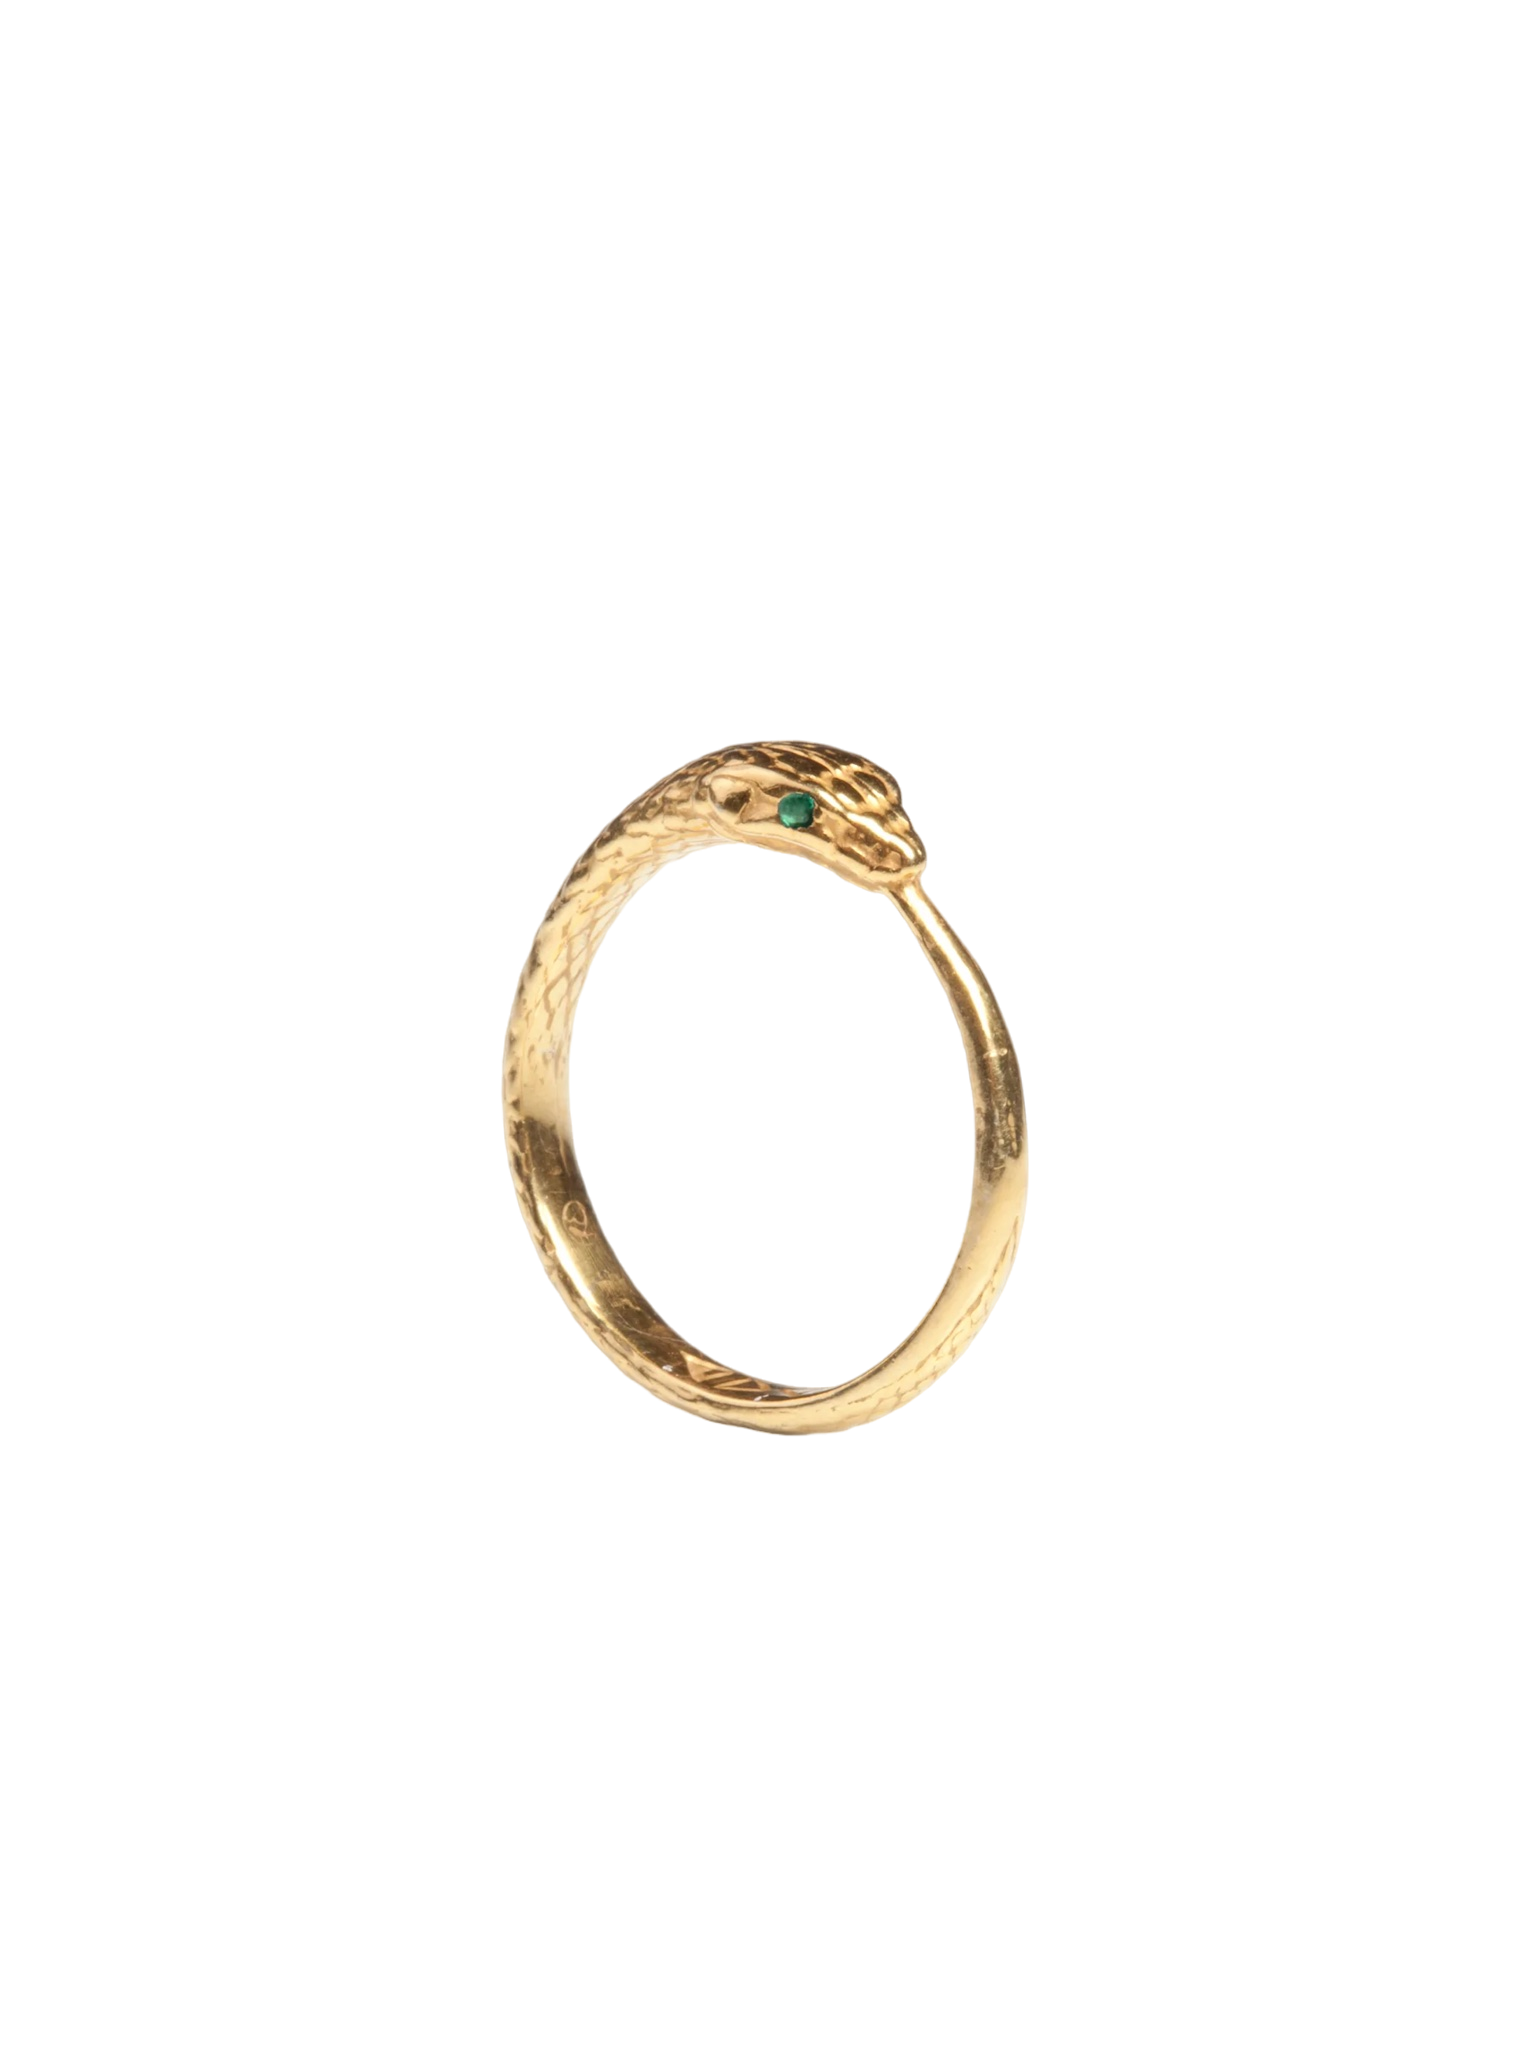 Ouroboros emerald snake ring